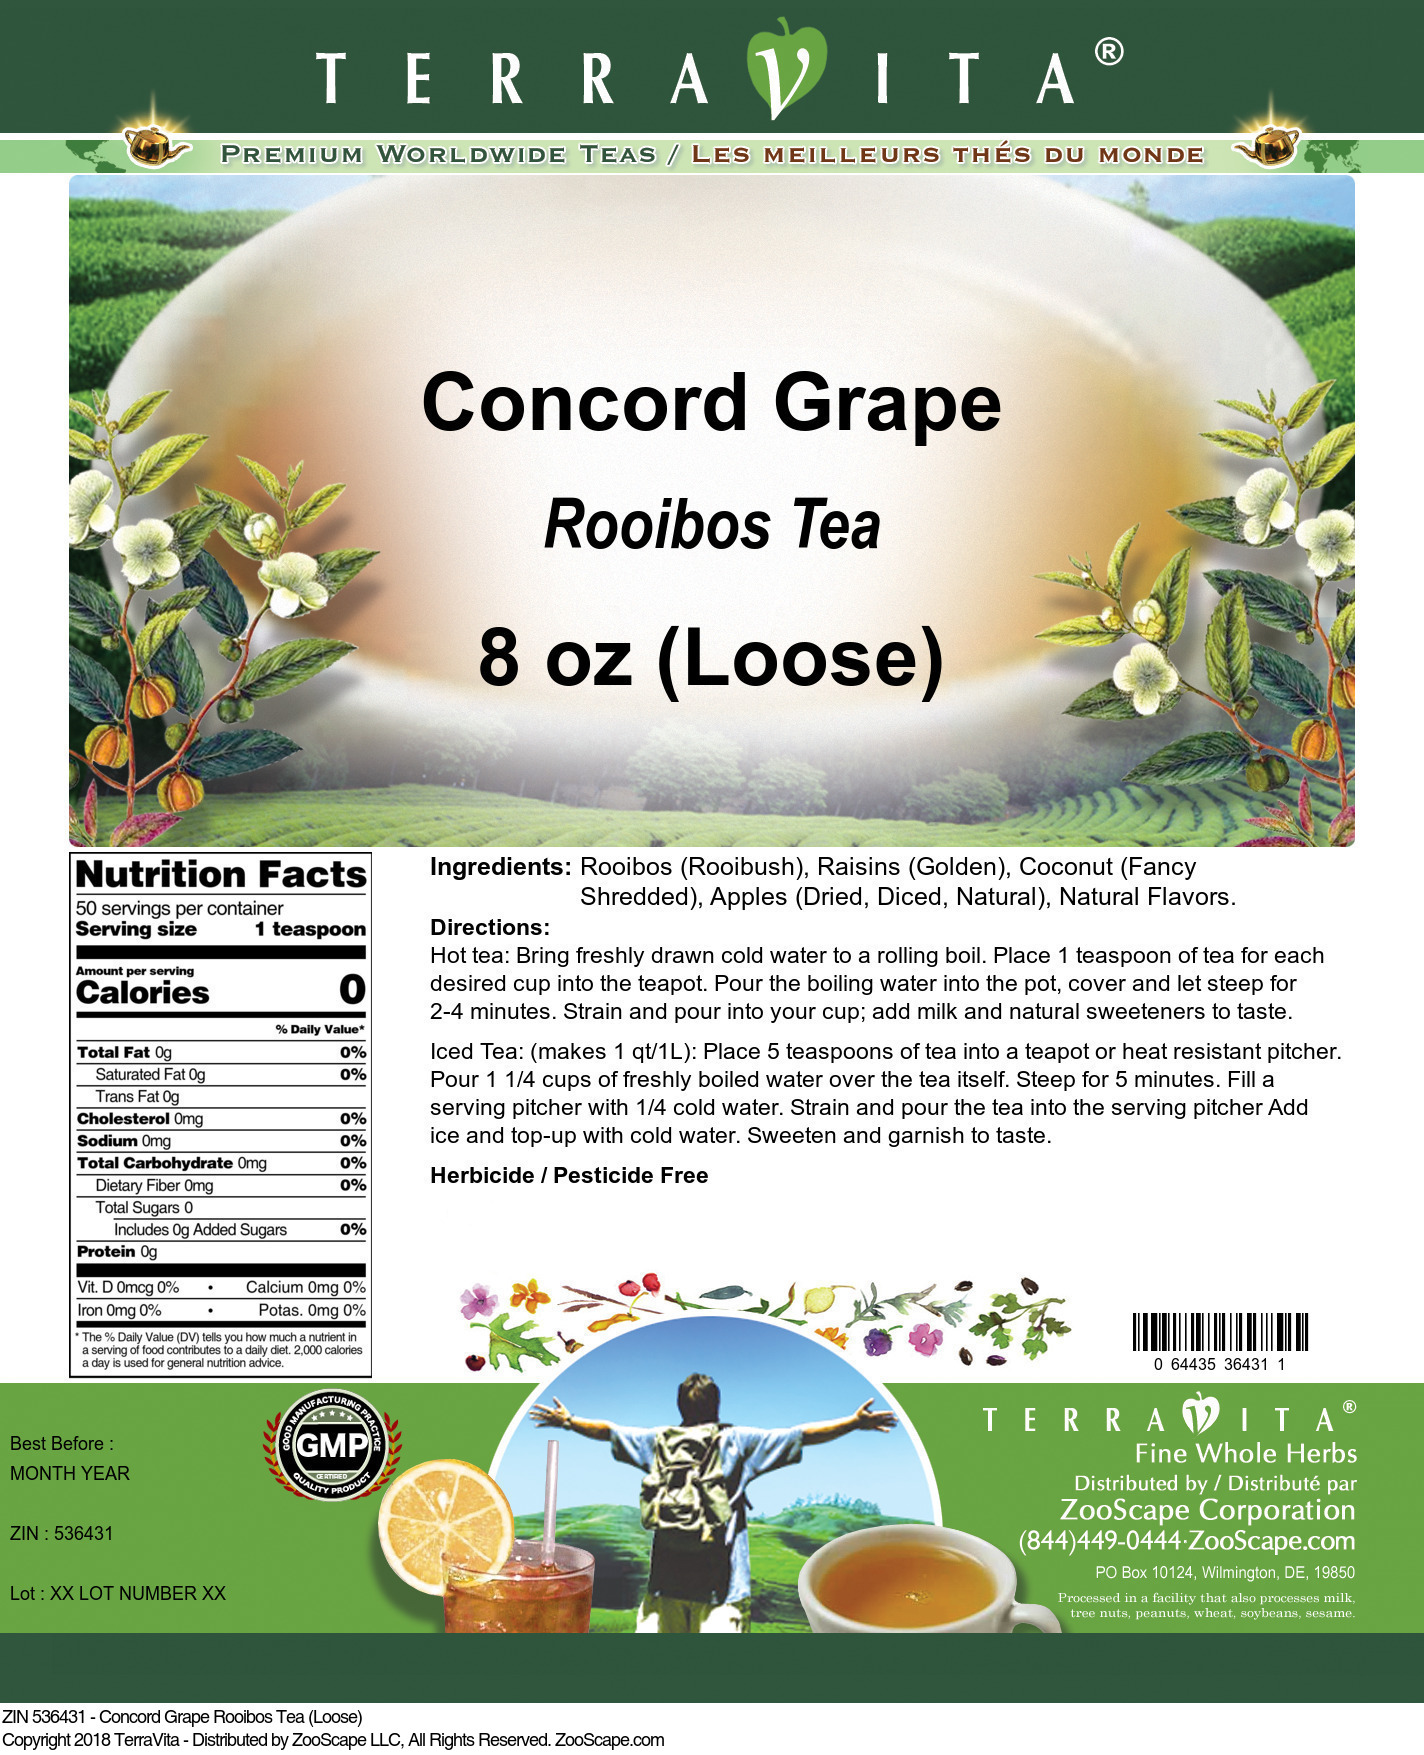 Concord Grape Rooibos Tea (Loose) - Label